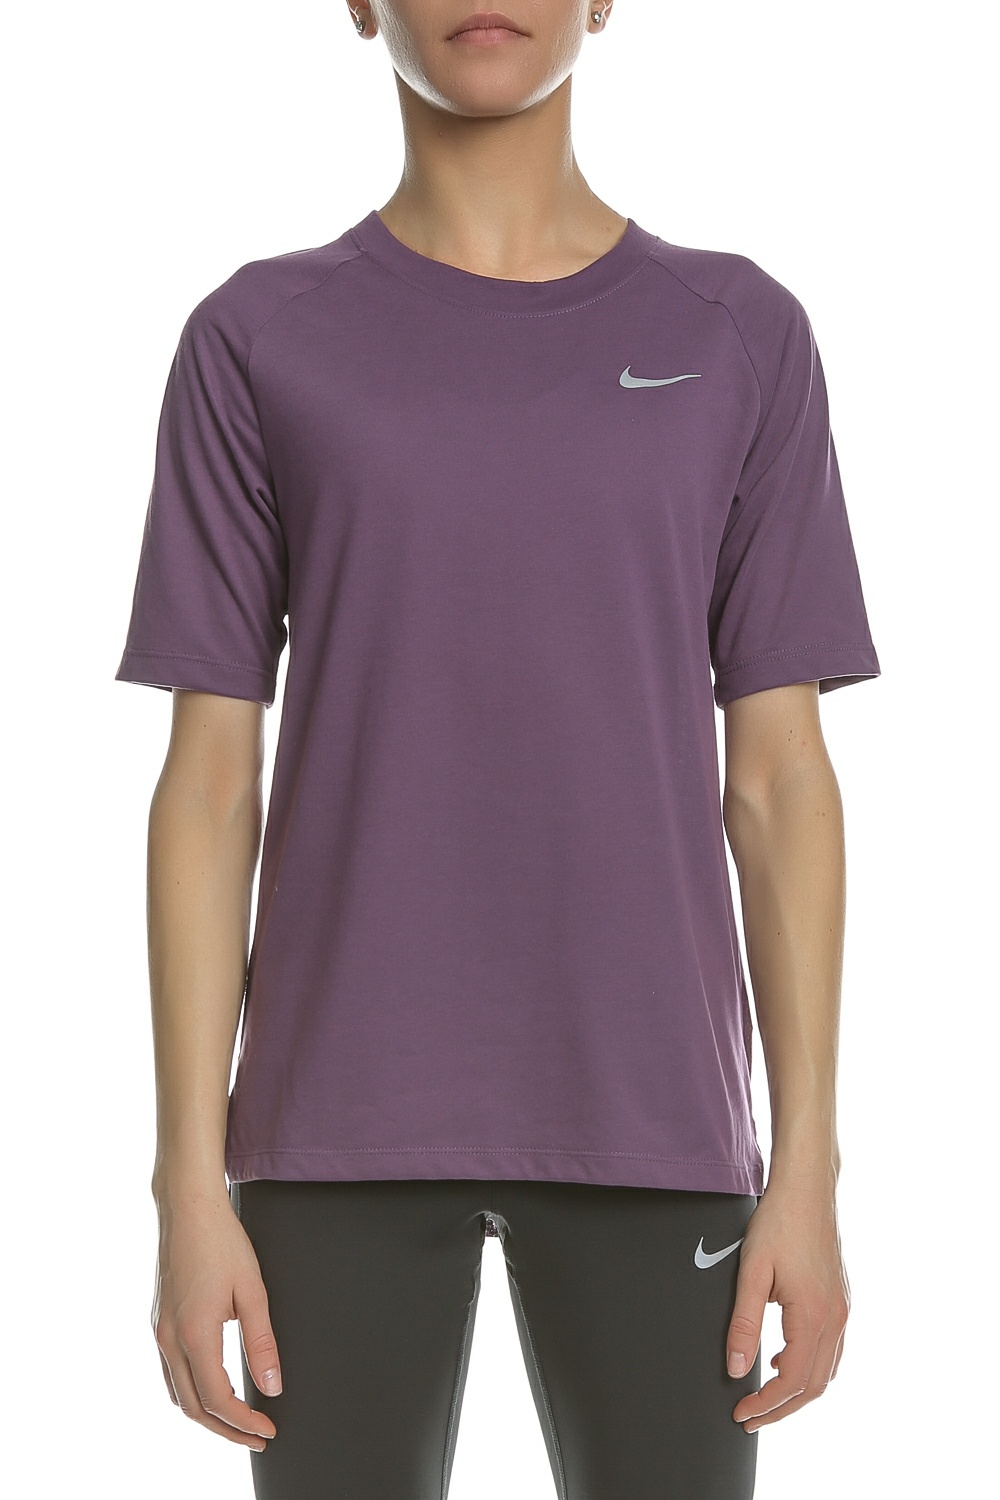 Γυναικεία/Ρούχα/Αθλητικά/T-shirt-Τοπ NIKE - Γυναικεία κοντομάνικη μπλούζα Nike TAILWIND μοβ